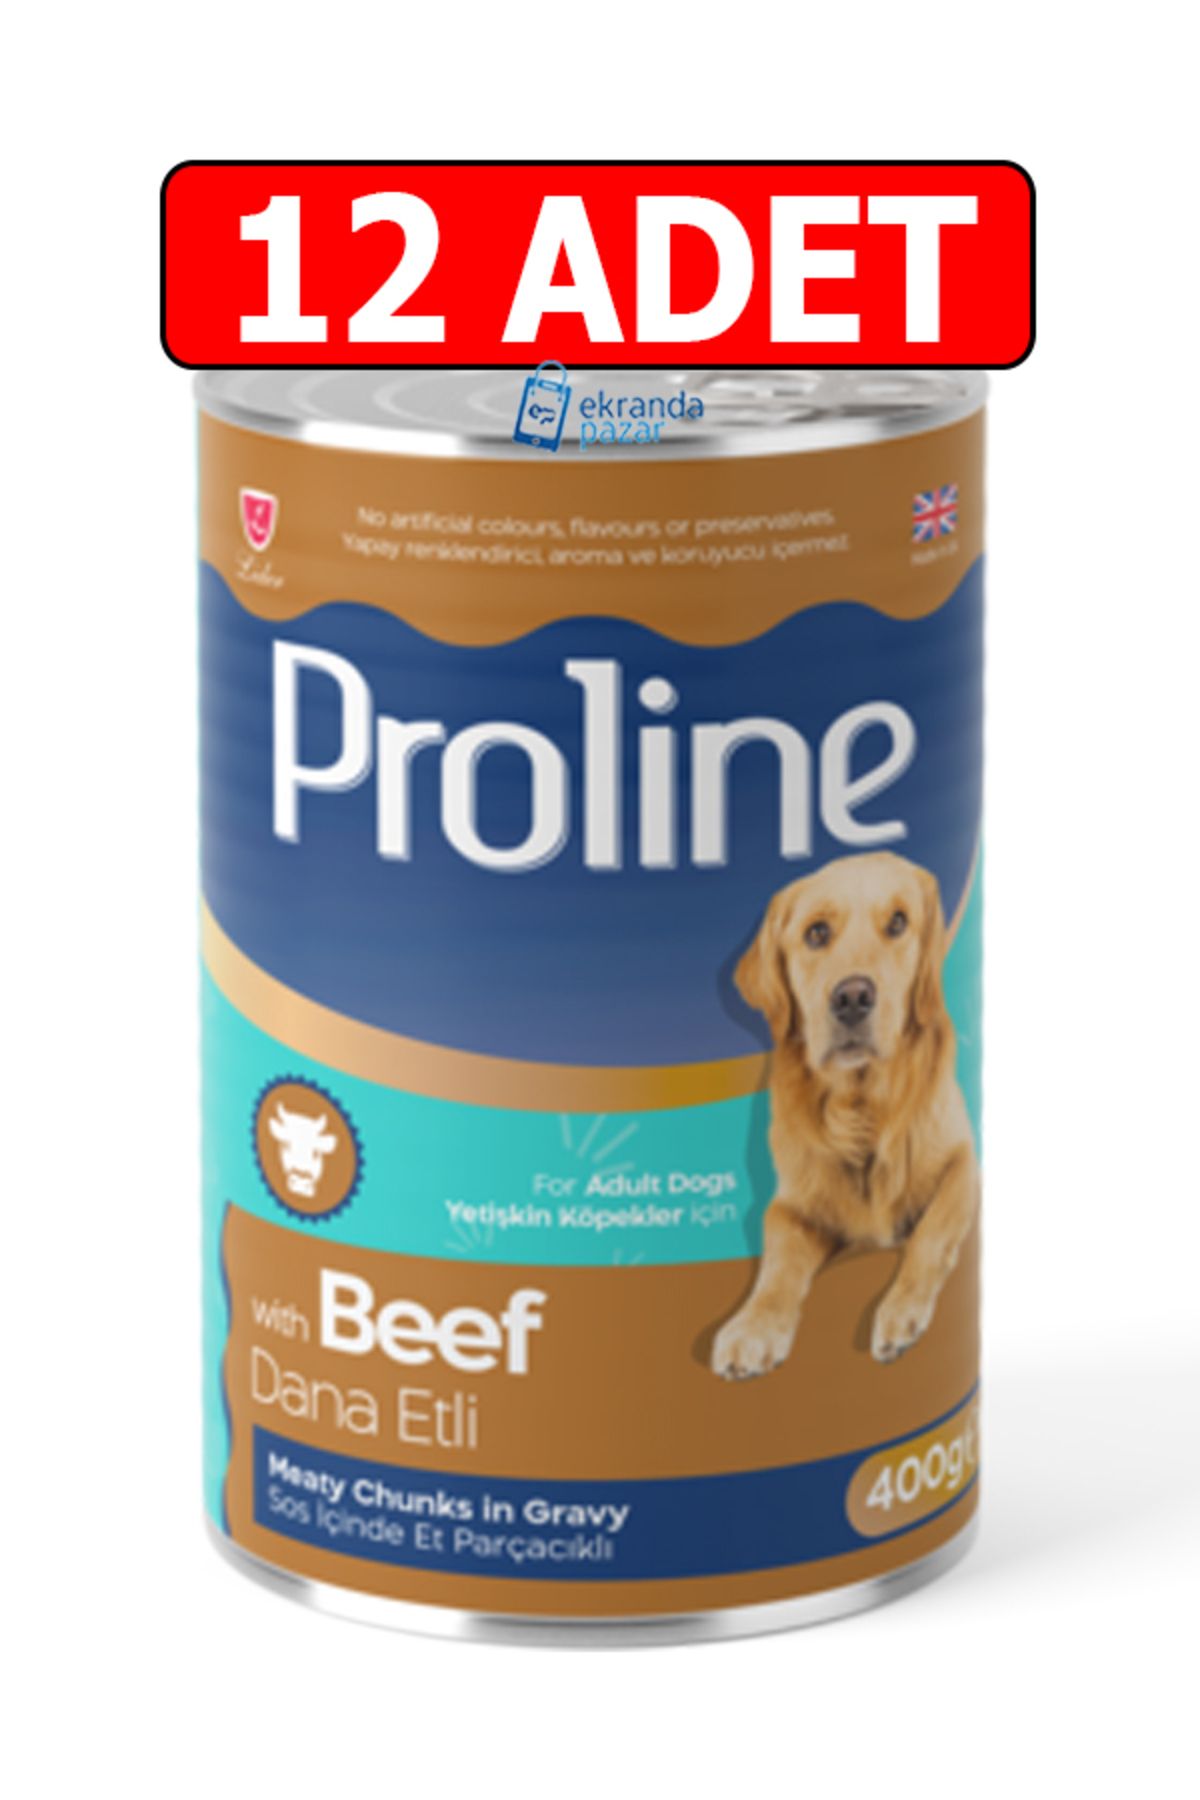 Proline Proline dana etli beef biftekli sos içinde et parçalı köpek konservesi 12adet 400gr köpek yaş mama